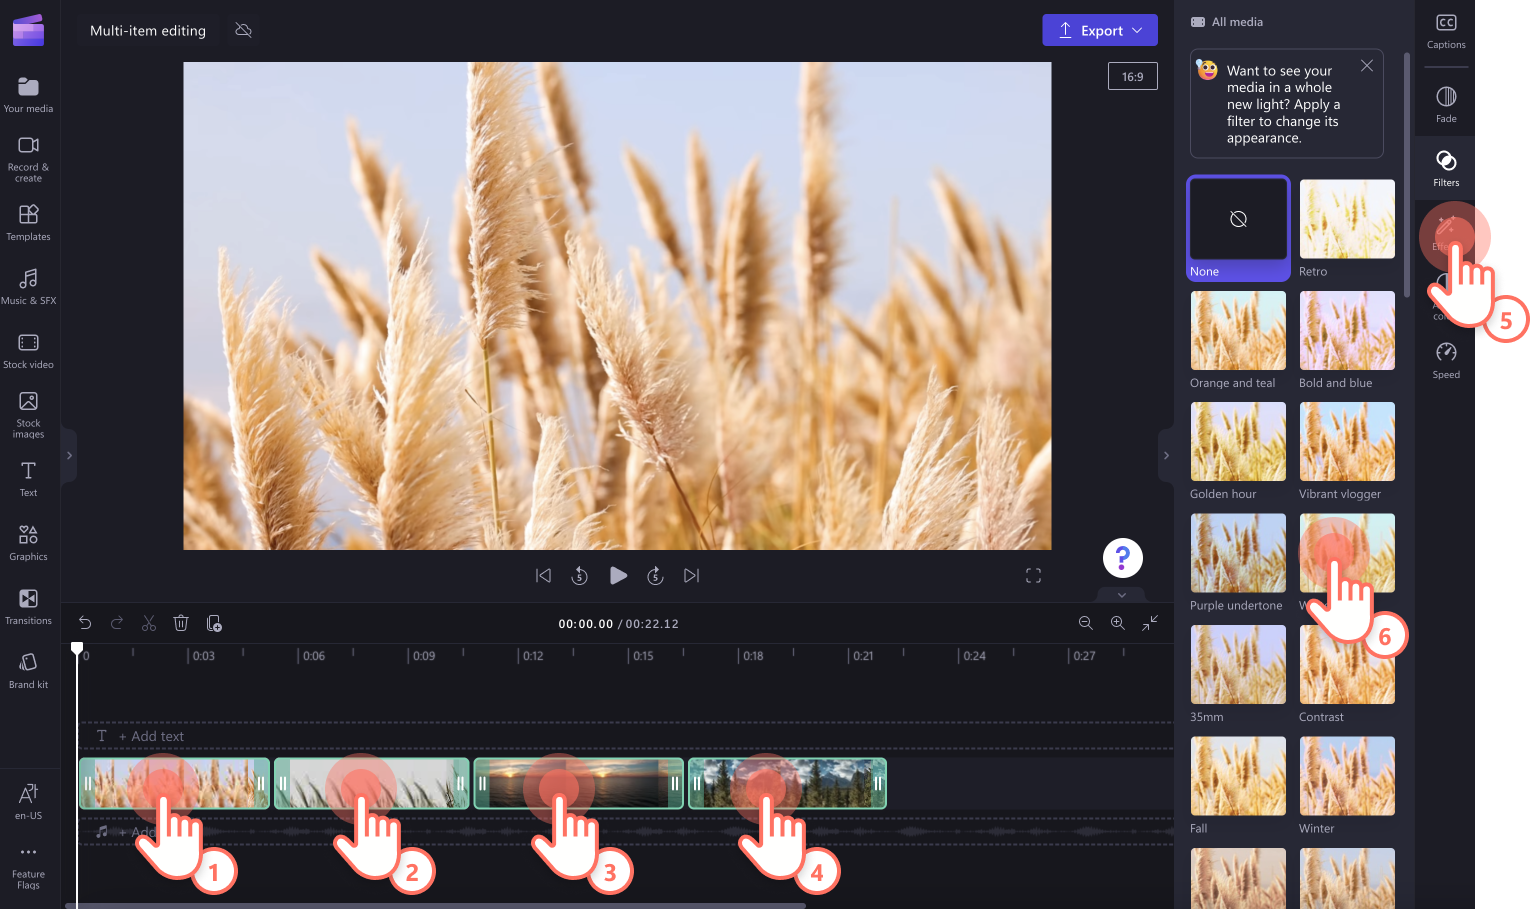 Obrázok používateľa, ktorý stlačí kláves Shift a klikne na viaceré videoklipy na časovej osi a pridá filtre.